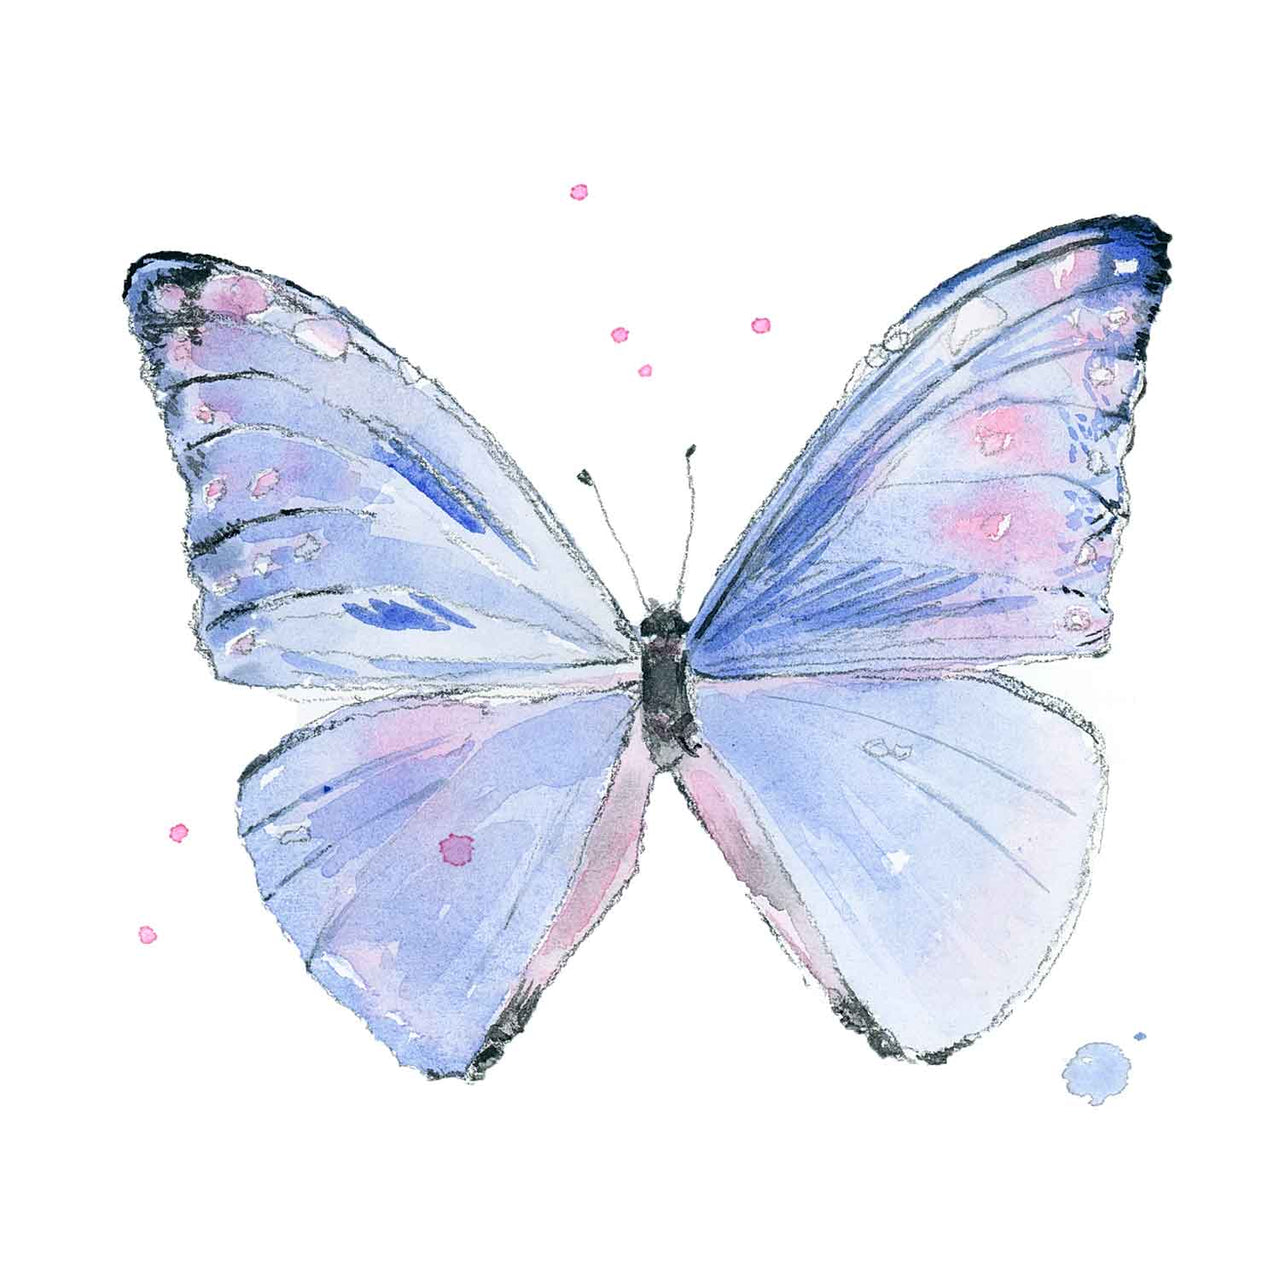 Ella's Butterflies - Blue Butterfly Print #2 (download)